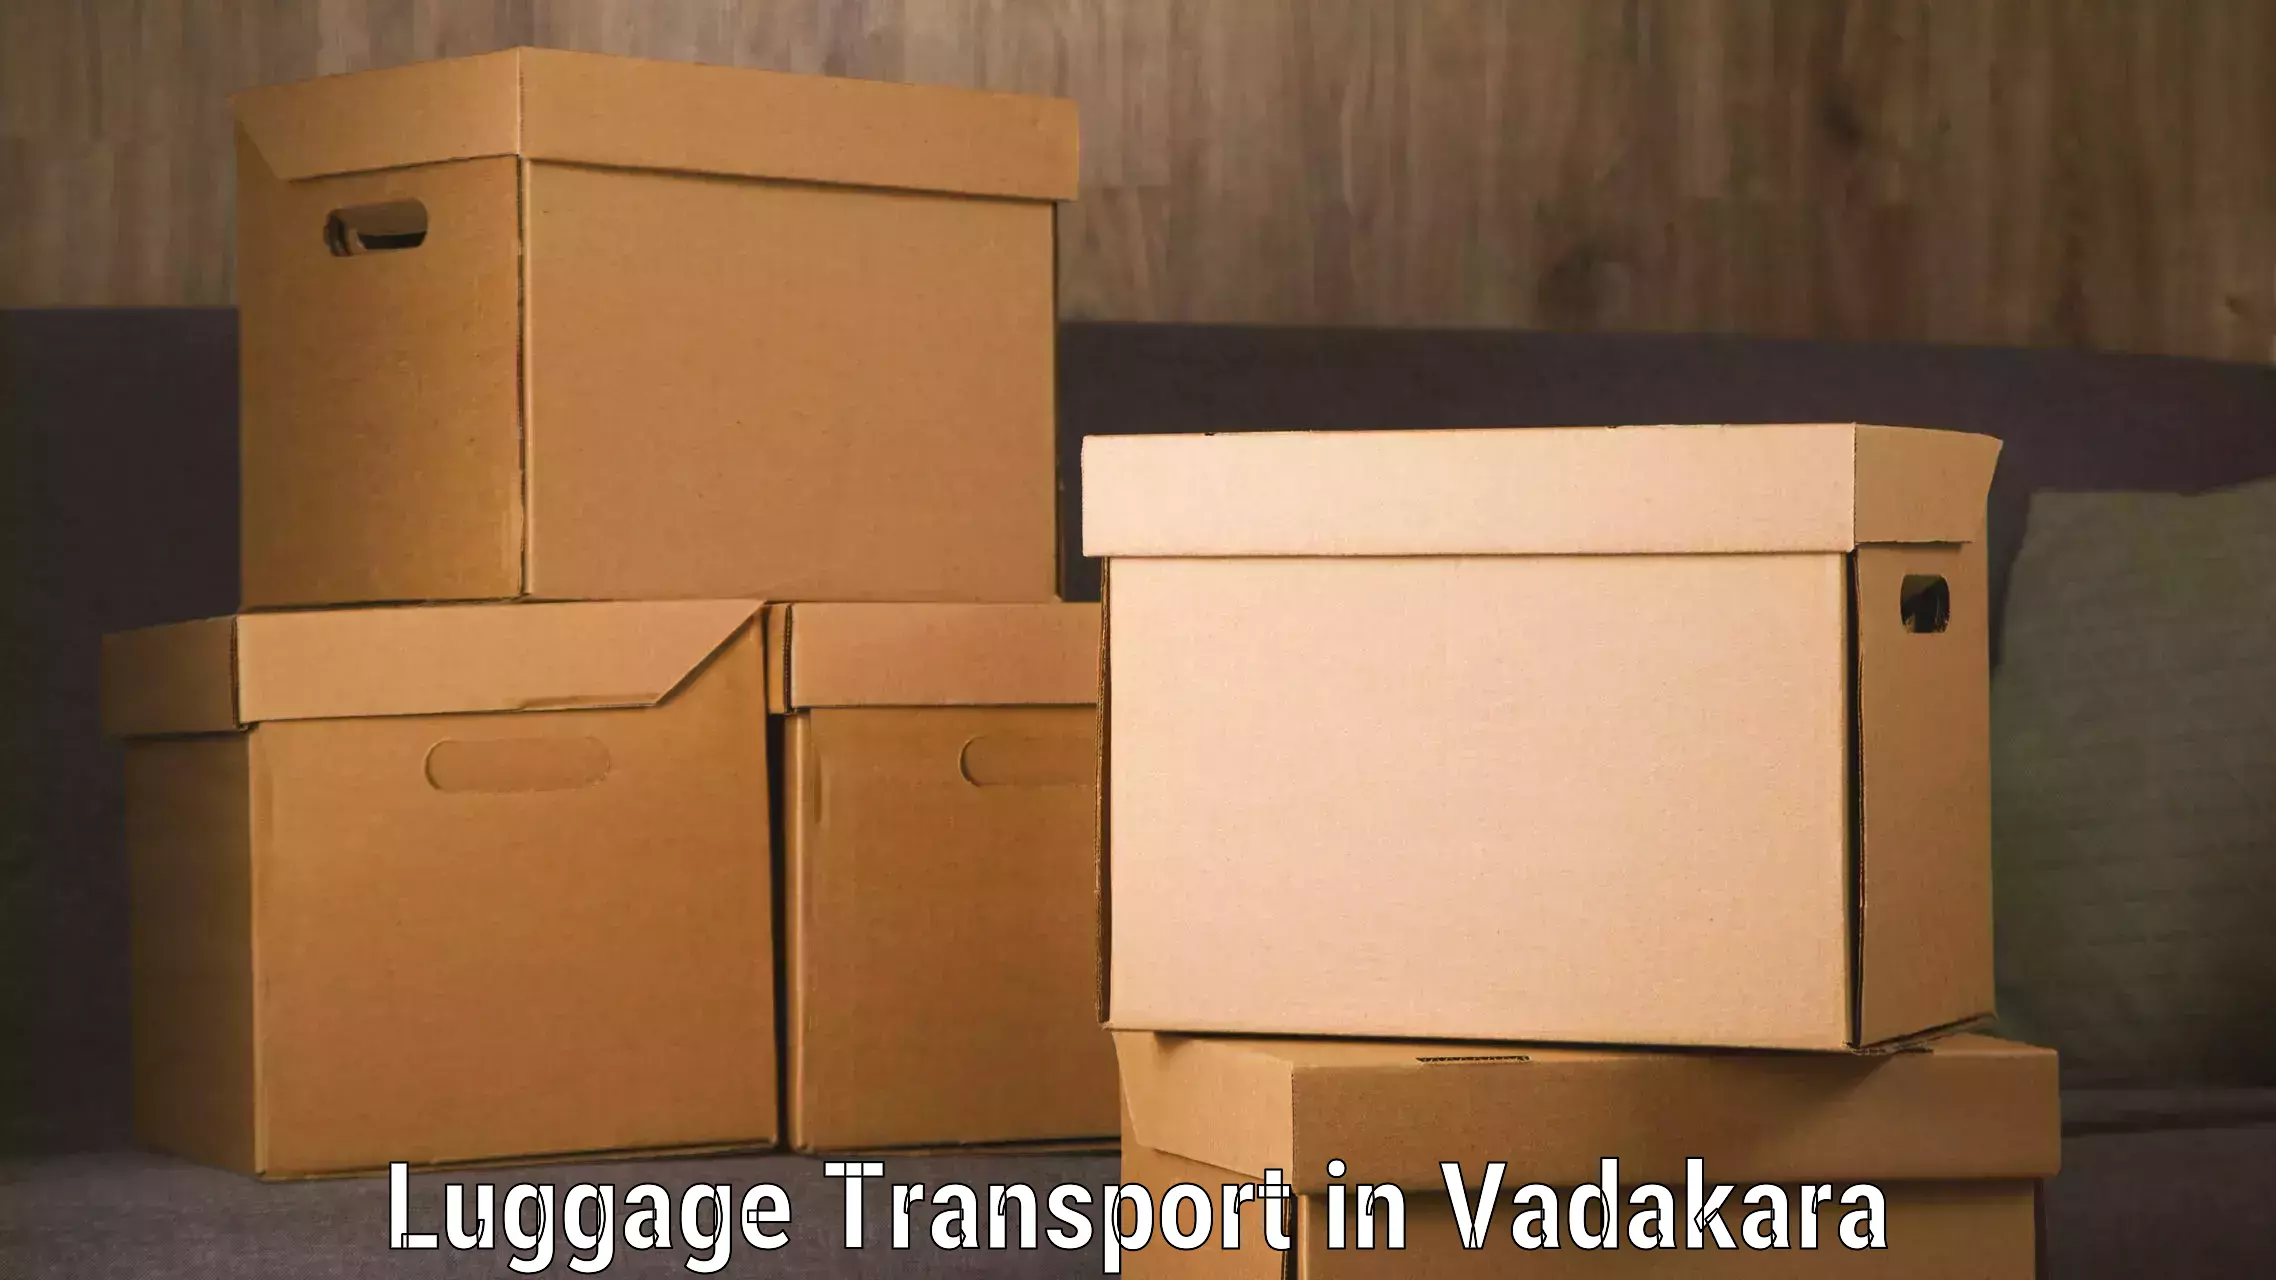 Baggage transport innovation in Vadakara